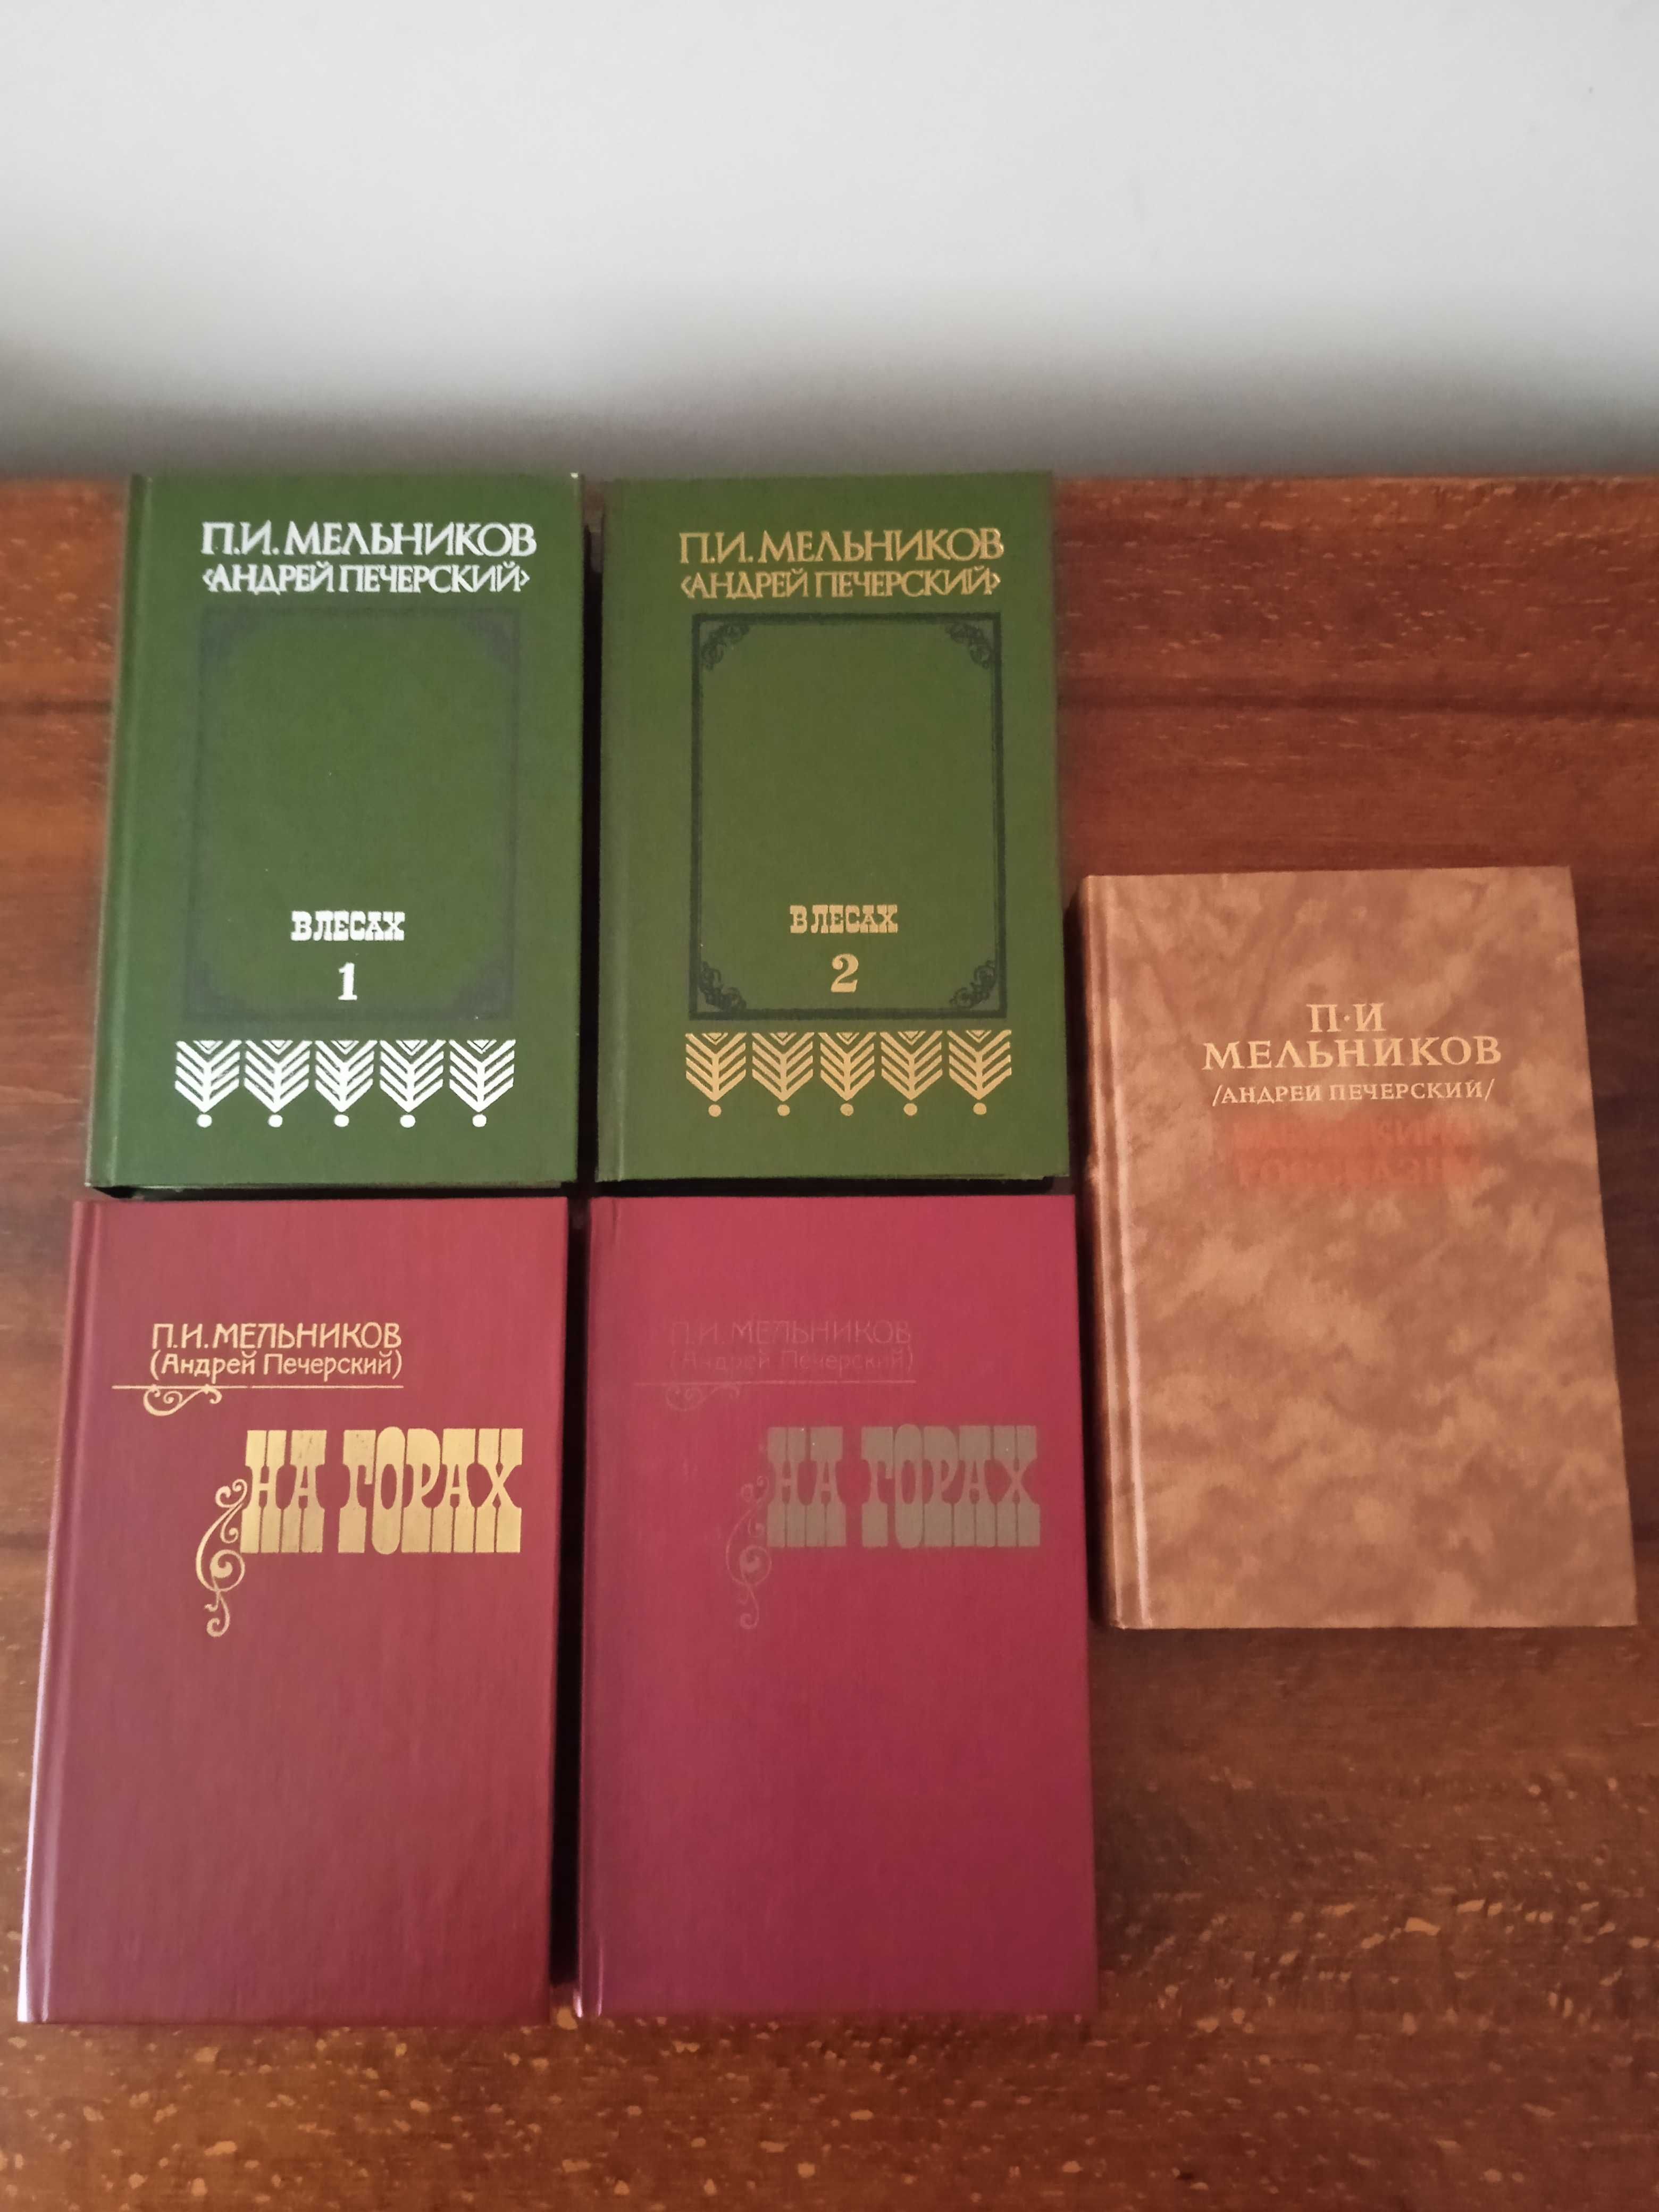 П.И.Мельников (А.Печерский), 5 книг.